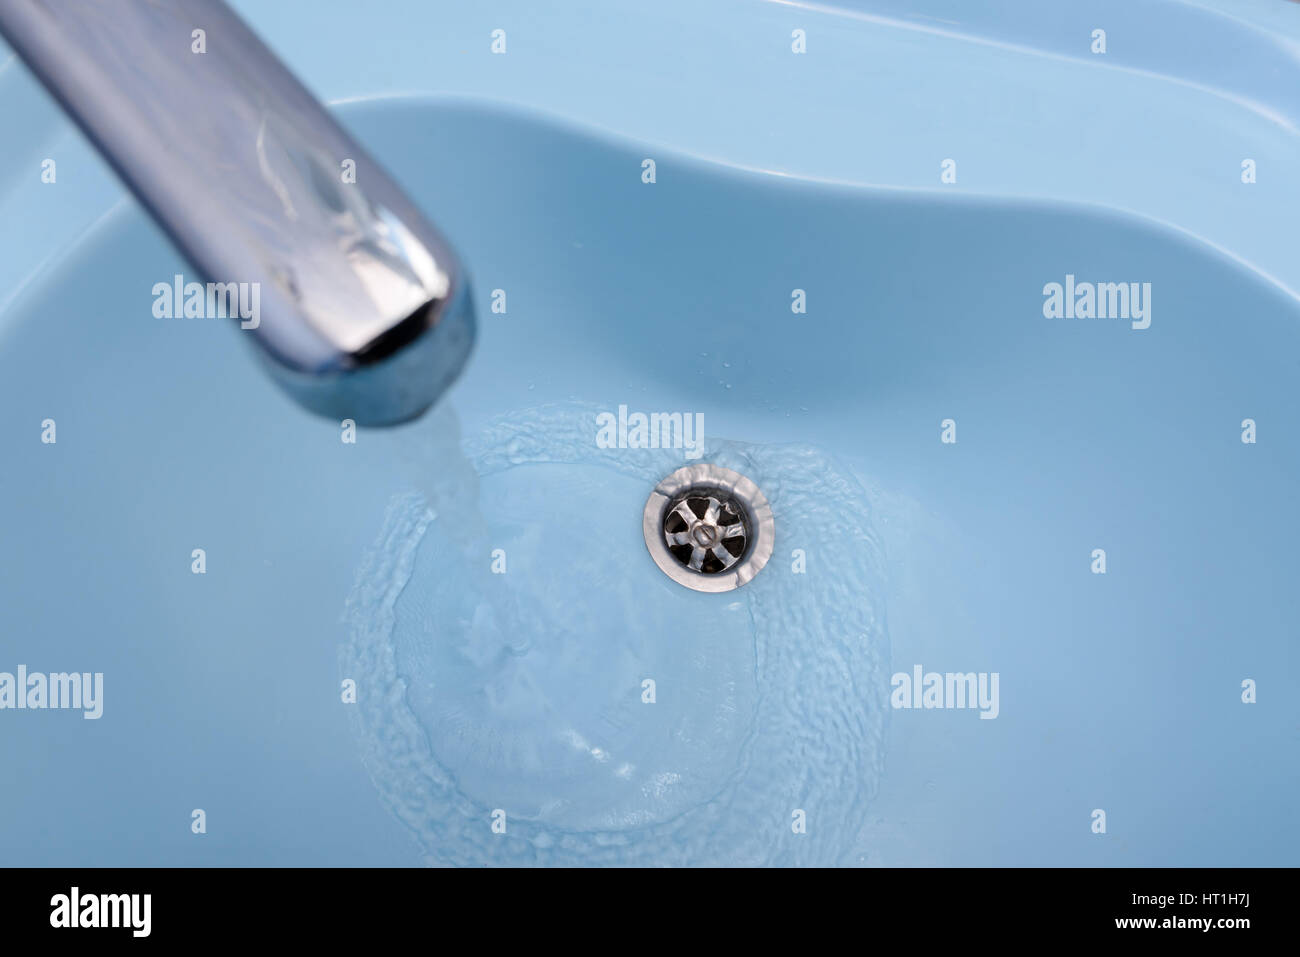 Das Wasser fließt aus dem Hahn in einem blauen Waschbecken. Die Flüssigkeit gießt, wirbelnden, in den offenen Stecker Stockfoto